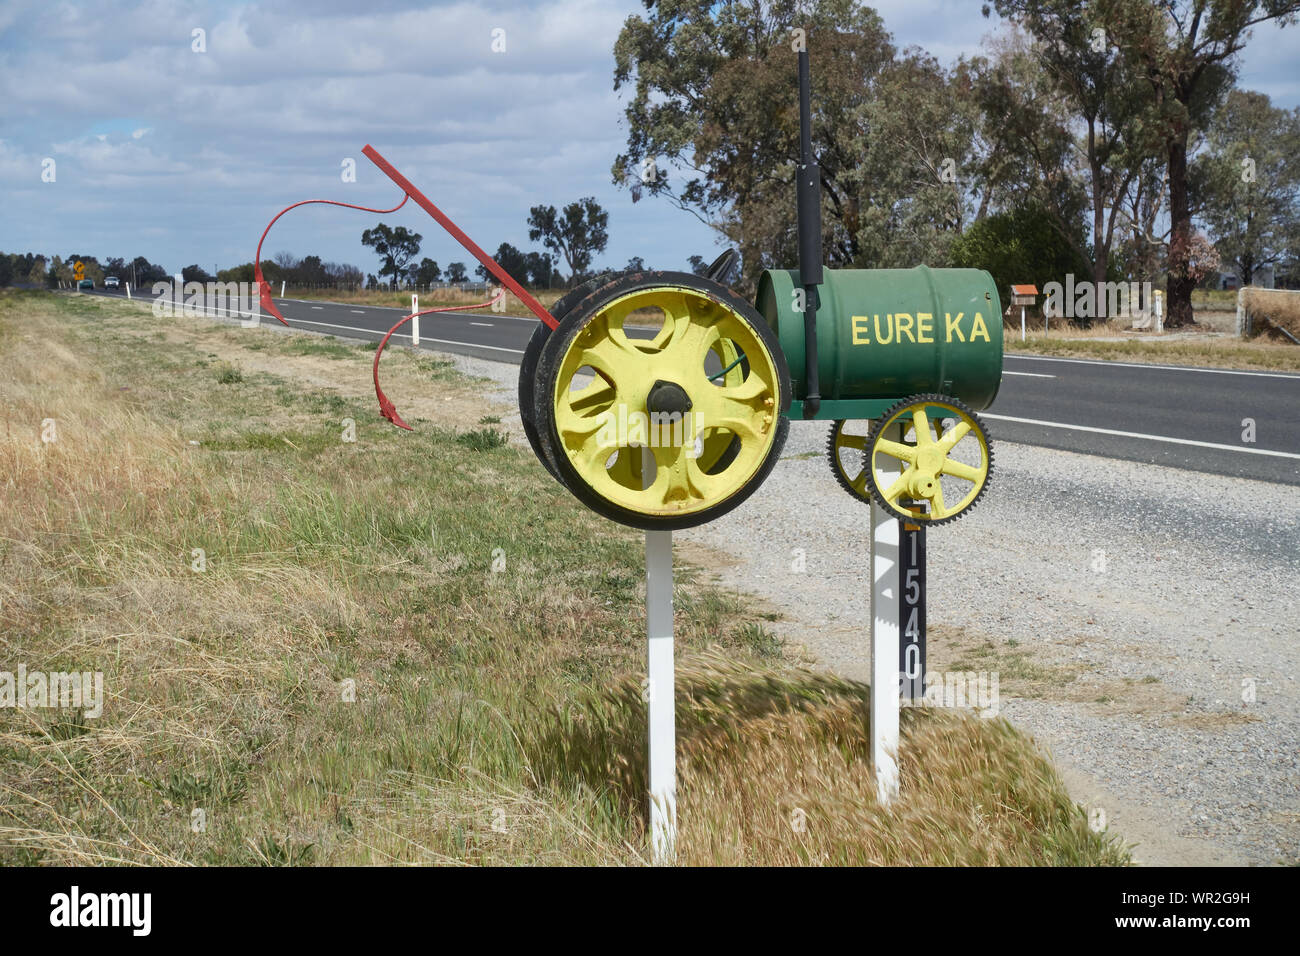 Strada casella posta fabbricate dalla vecchia macchina parti per assomigliare ad un trattore agricolo, Hallsville NSW Australia. Foto Stock